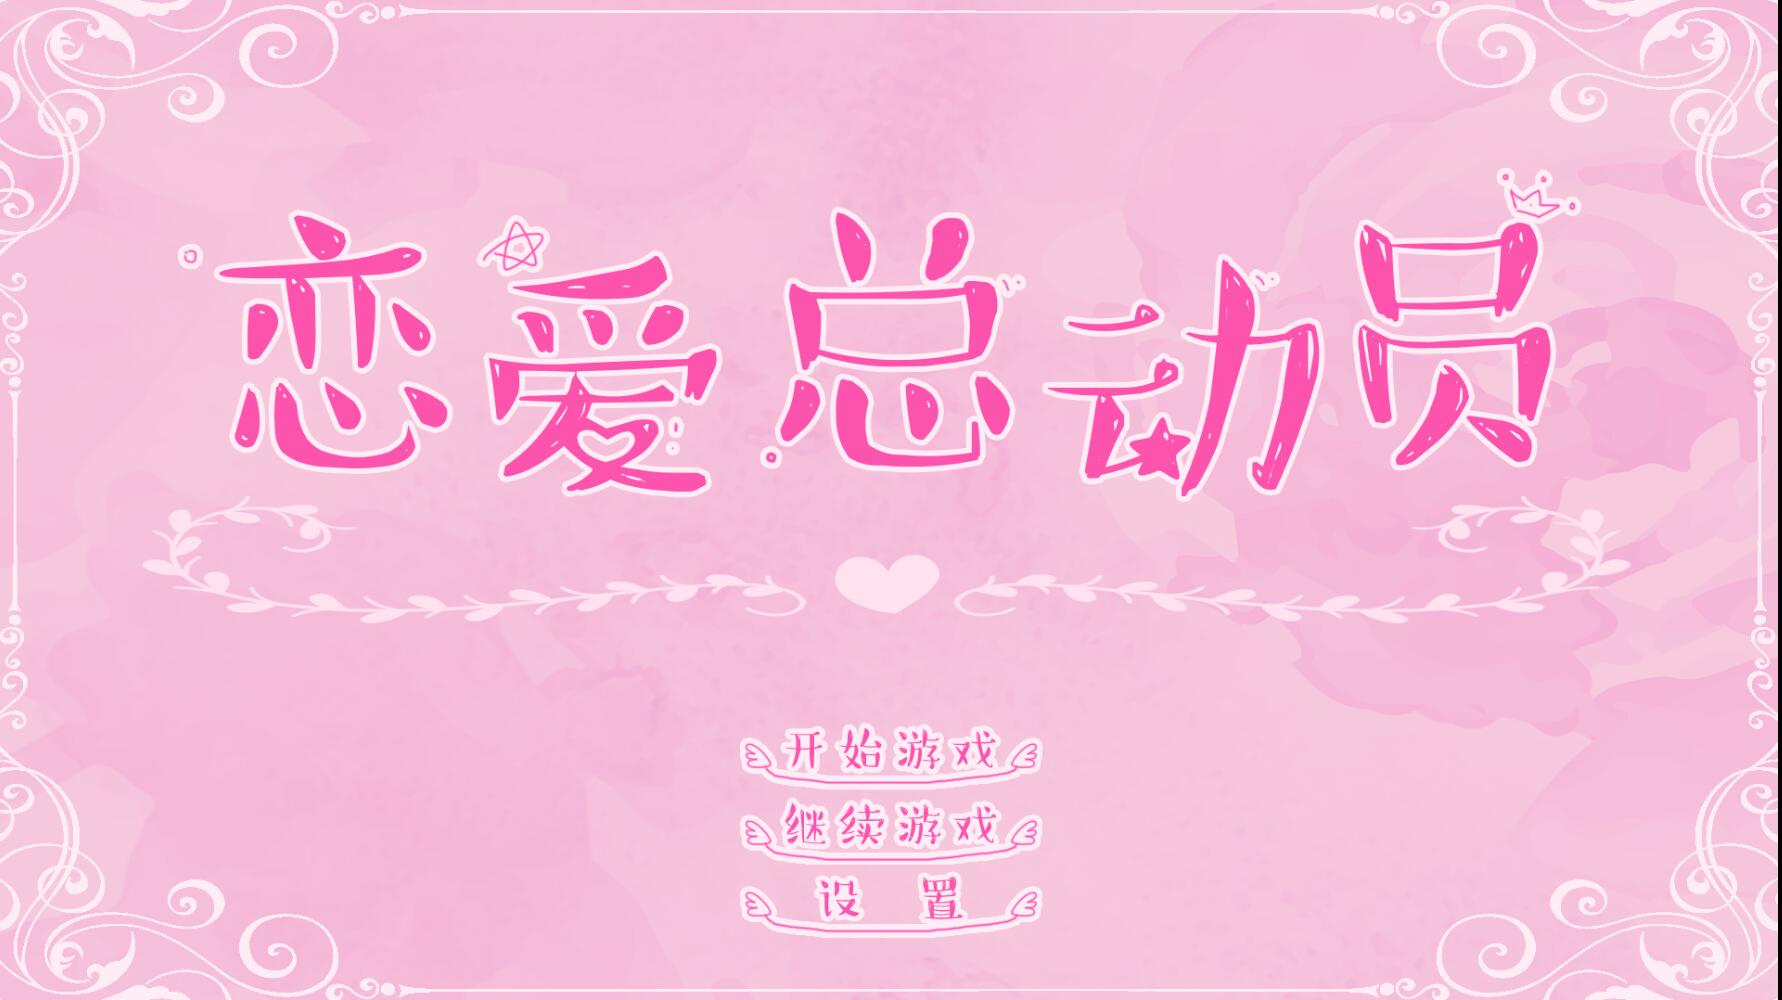 恋爱总动员 v1.18国产文字类中文单机游戏 恋爱的感觉又来了-创享游戏网